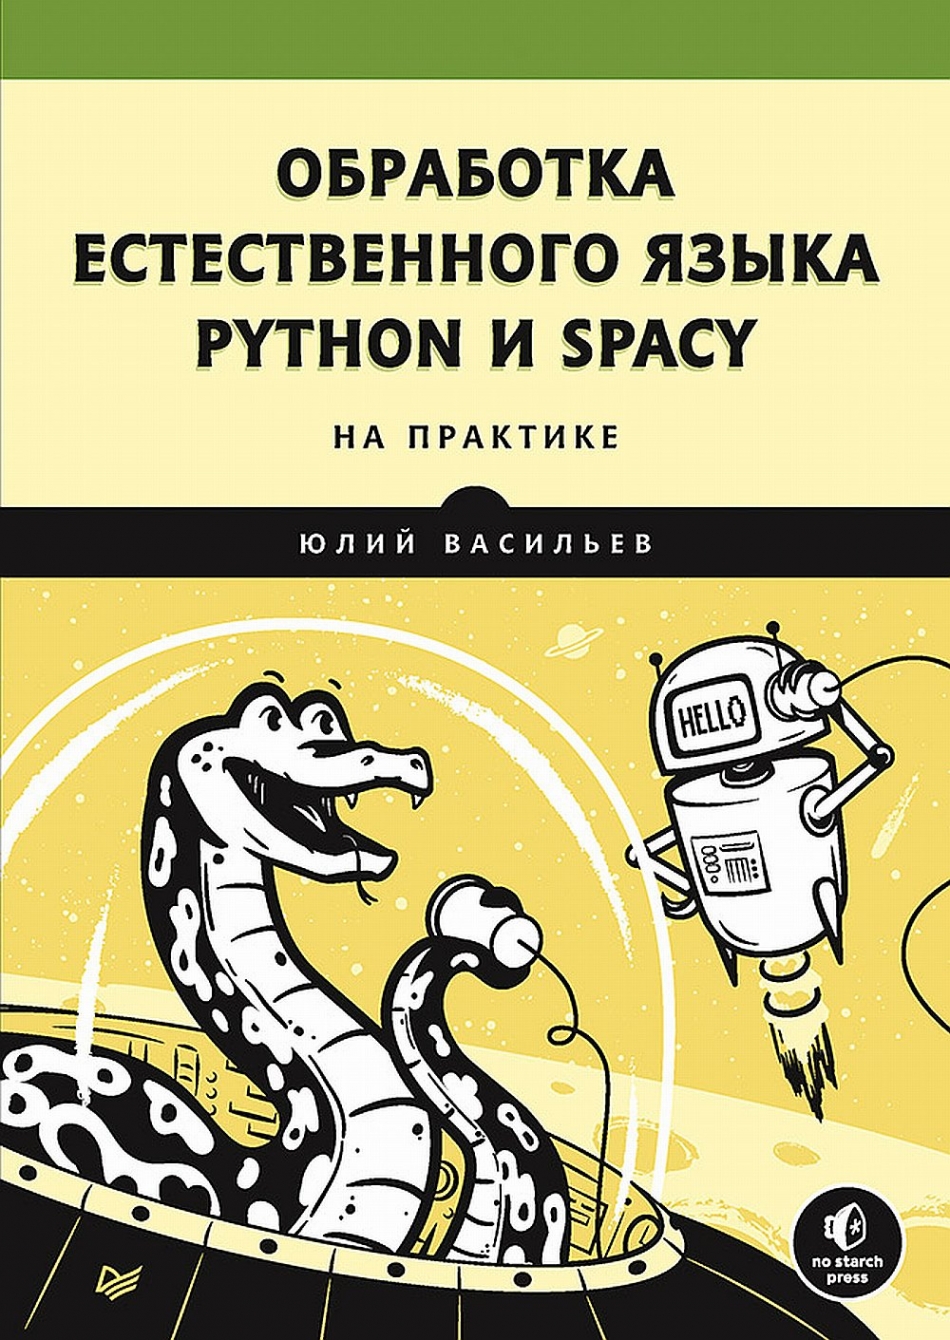  .   . Python  spaCy   